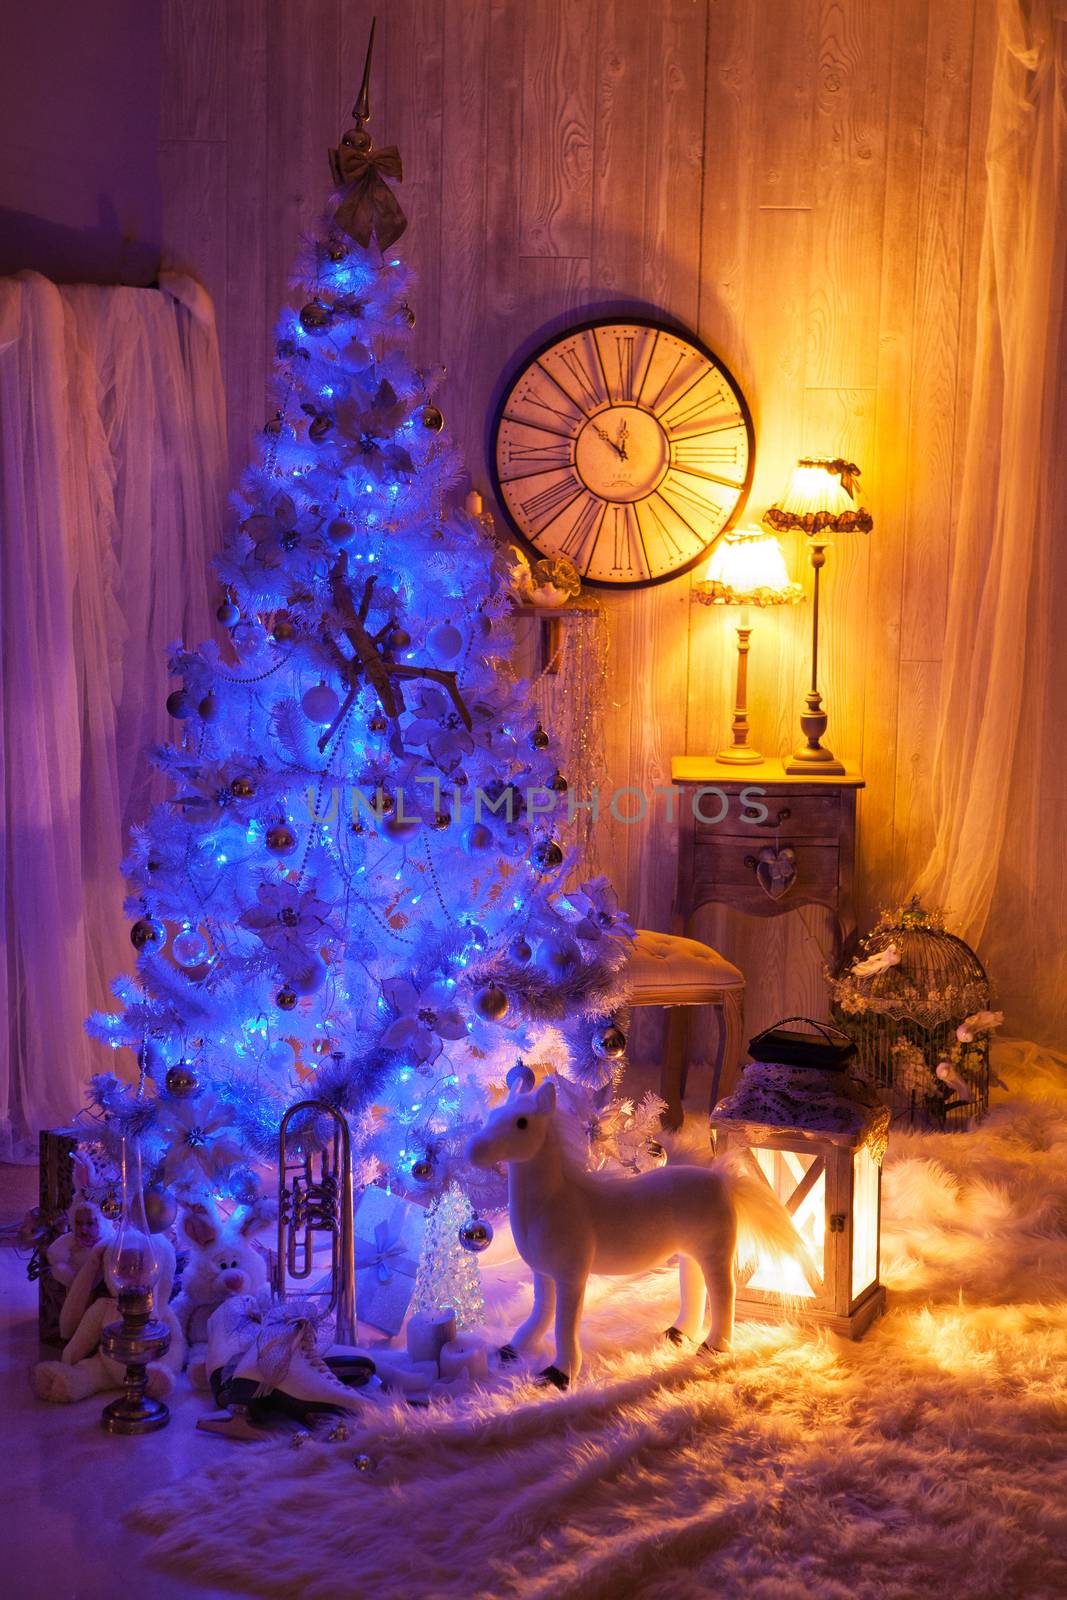 Christmas Still Life by Fotoskat